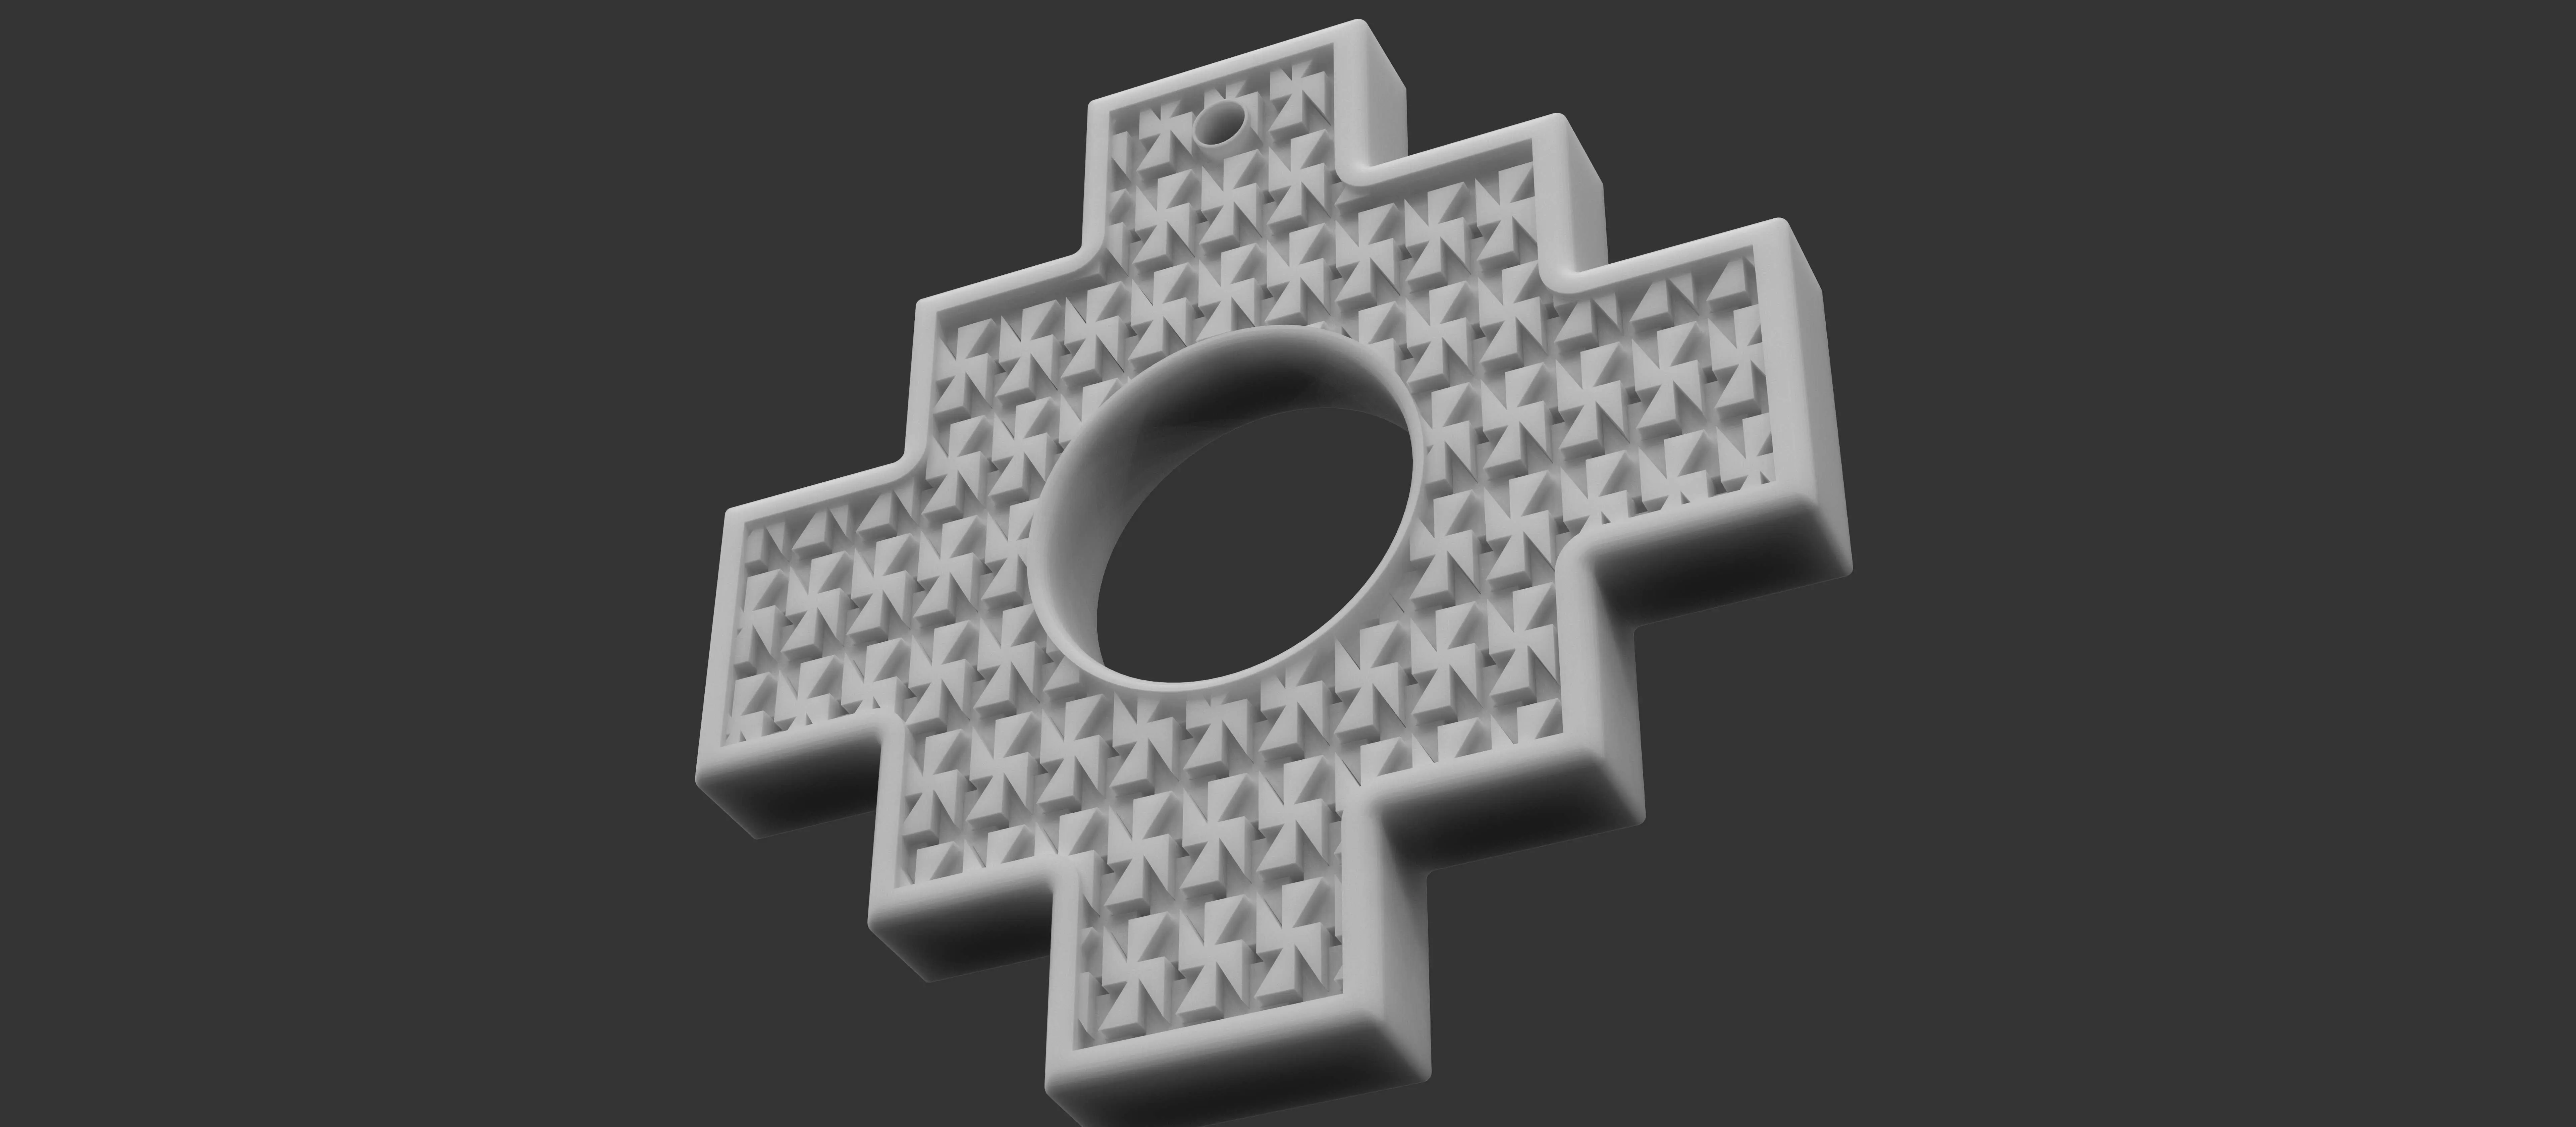 Cruz Chakana (andean cross) Escher Concept